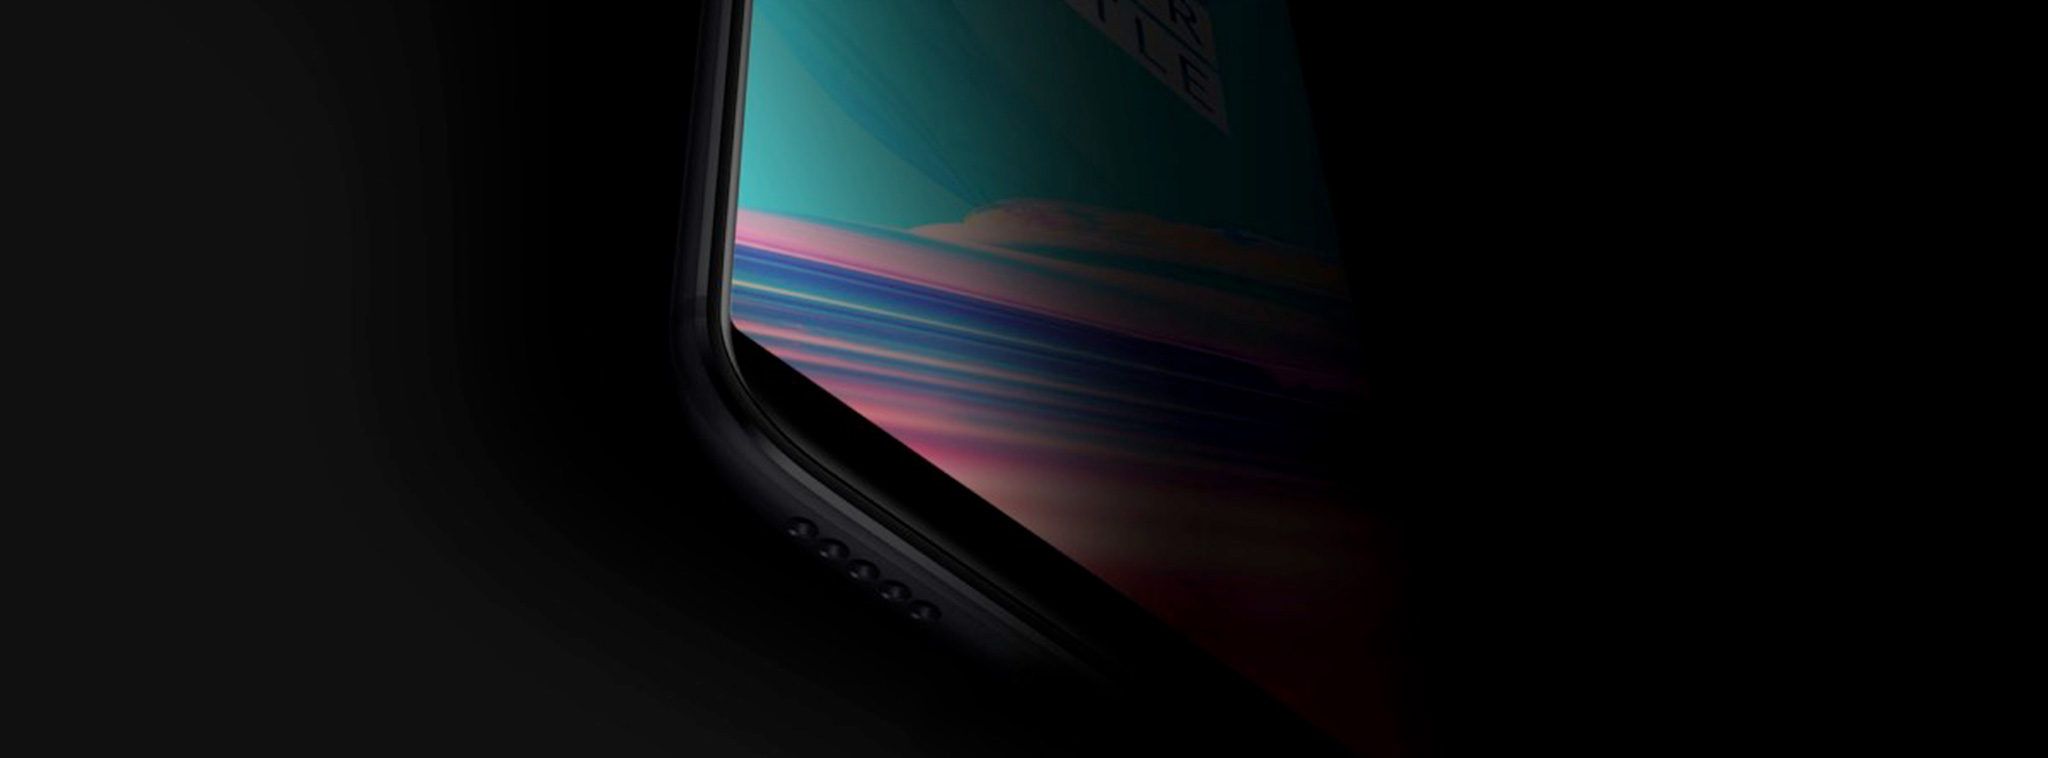 Rò rỉ hình ảnh chính thức của OnePlus 5T: cảm biến vân tay ra phía sau, màn hình lớn hơn, viền mỏng?